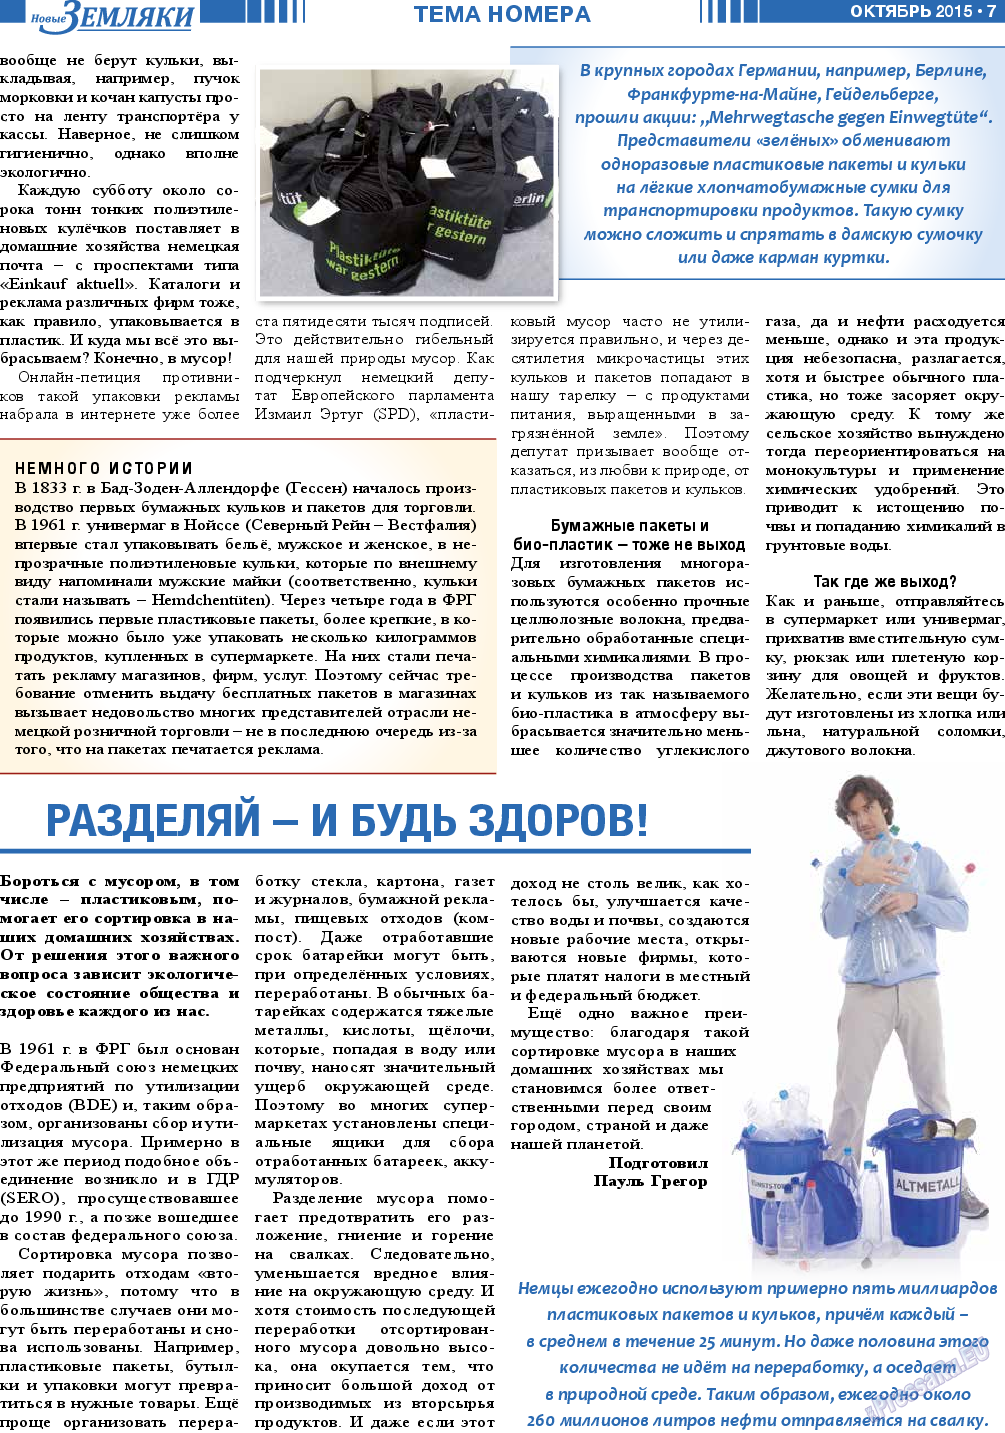 Новые Земляки, газета. 2015 №10 стр.7